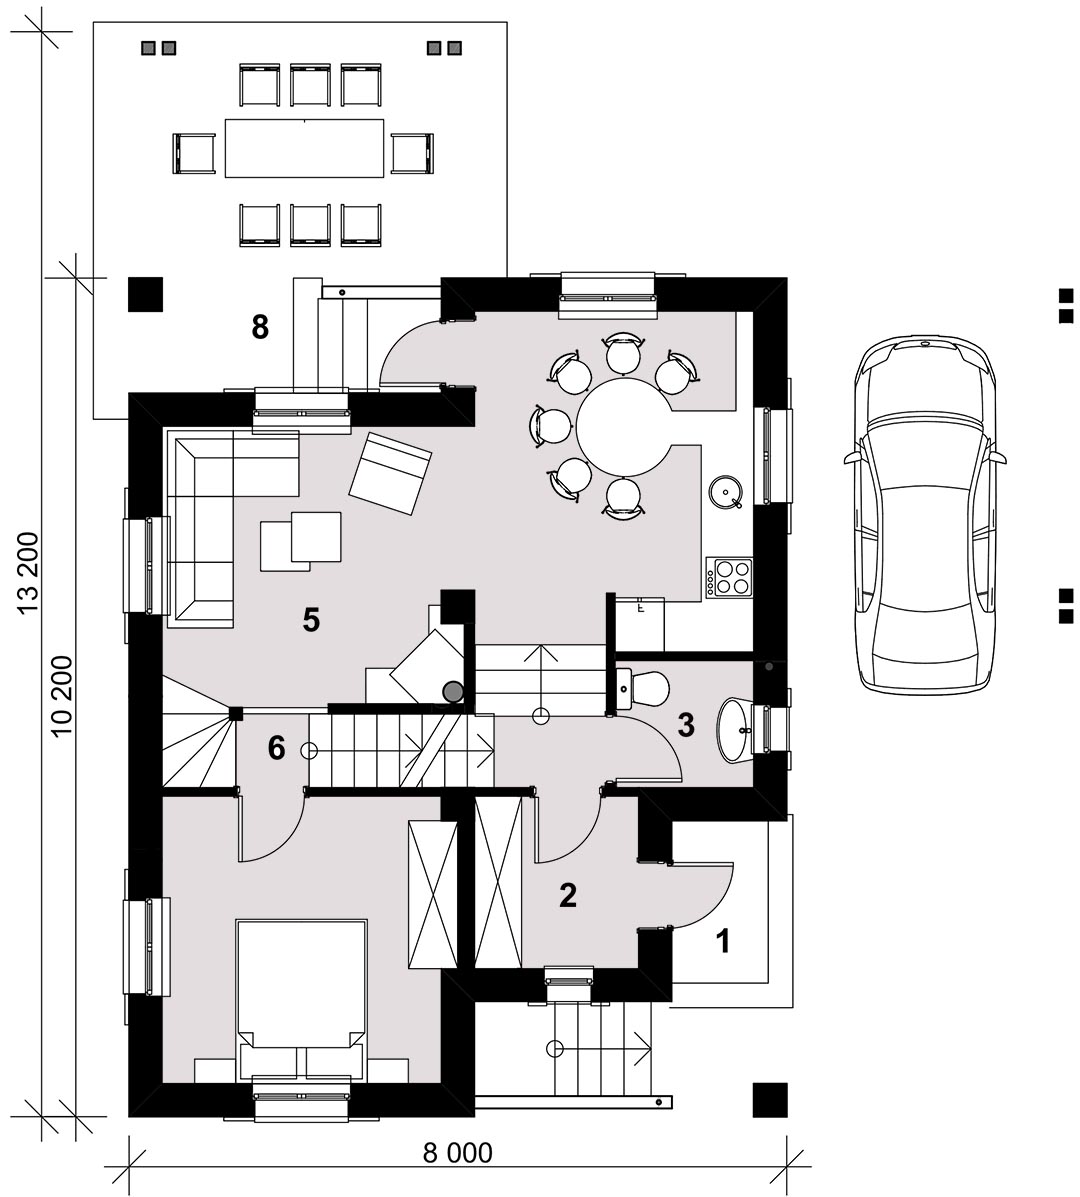 СНЕГИРИ - план 1-го этажа 5-комнатного дома со смещением этажей - готовый проект от Инваполис